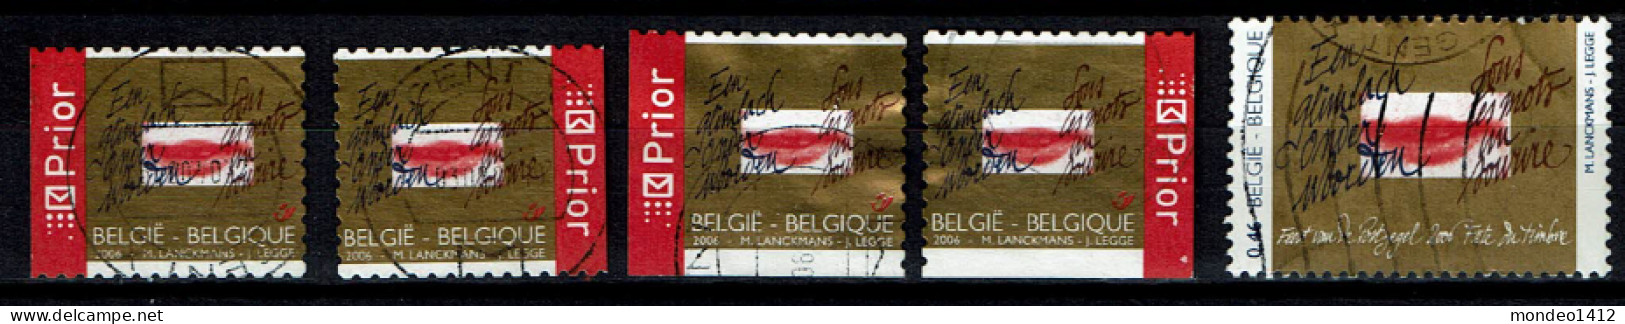 België OBP 3498/3499 - Day Of The Stamp - Usati